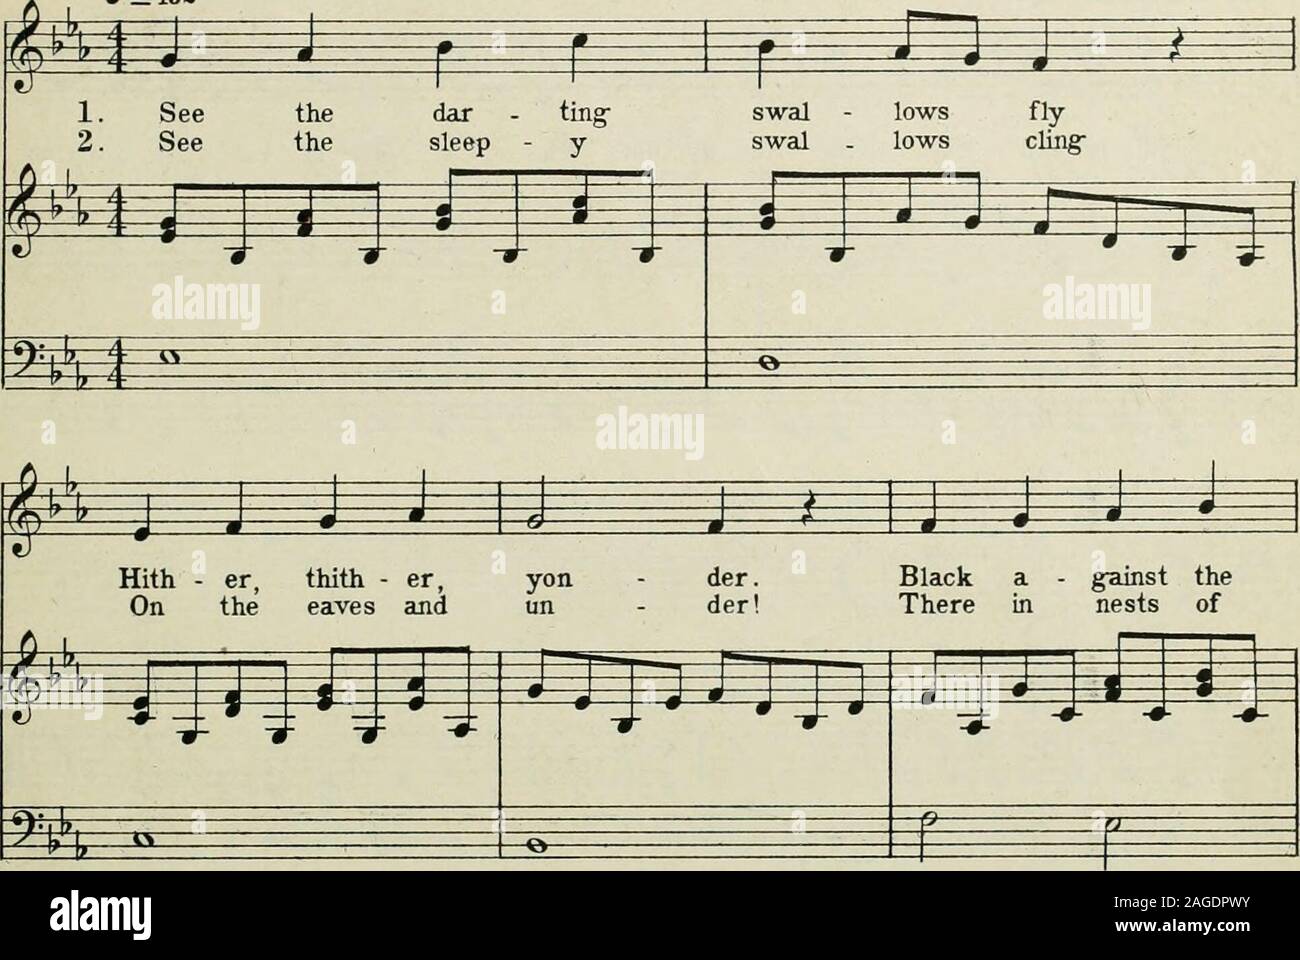 The Progressive Music Series Teacher S Manual For First Second And Third Grades Hj J Jir 1 M M F Pp Pplff L J Ij Ijjj Ljjj 0 Ver